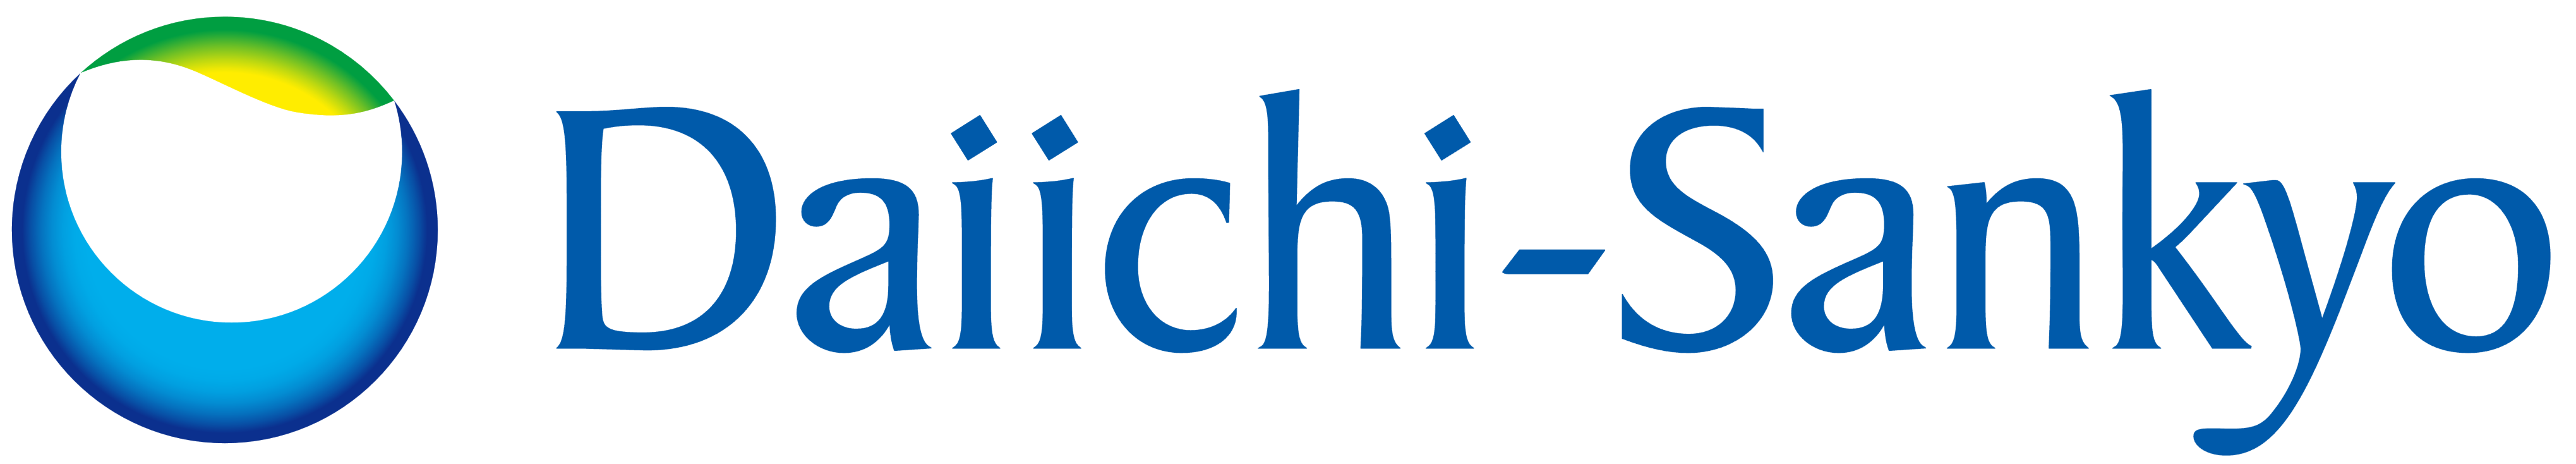 Daiichi-Sankyo logo with a green and blue circle 